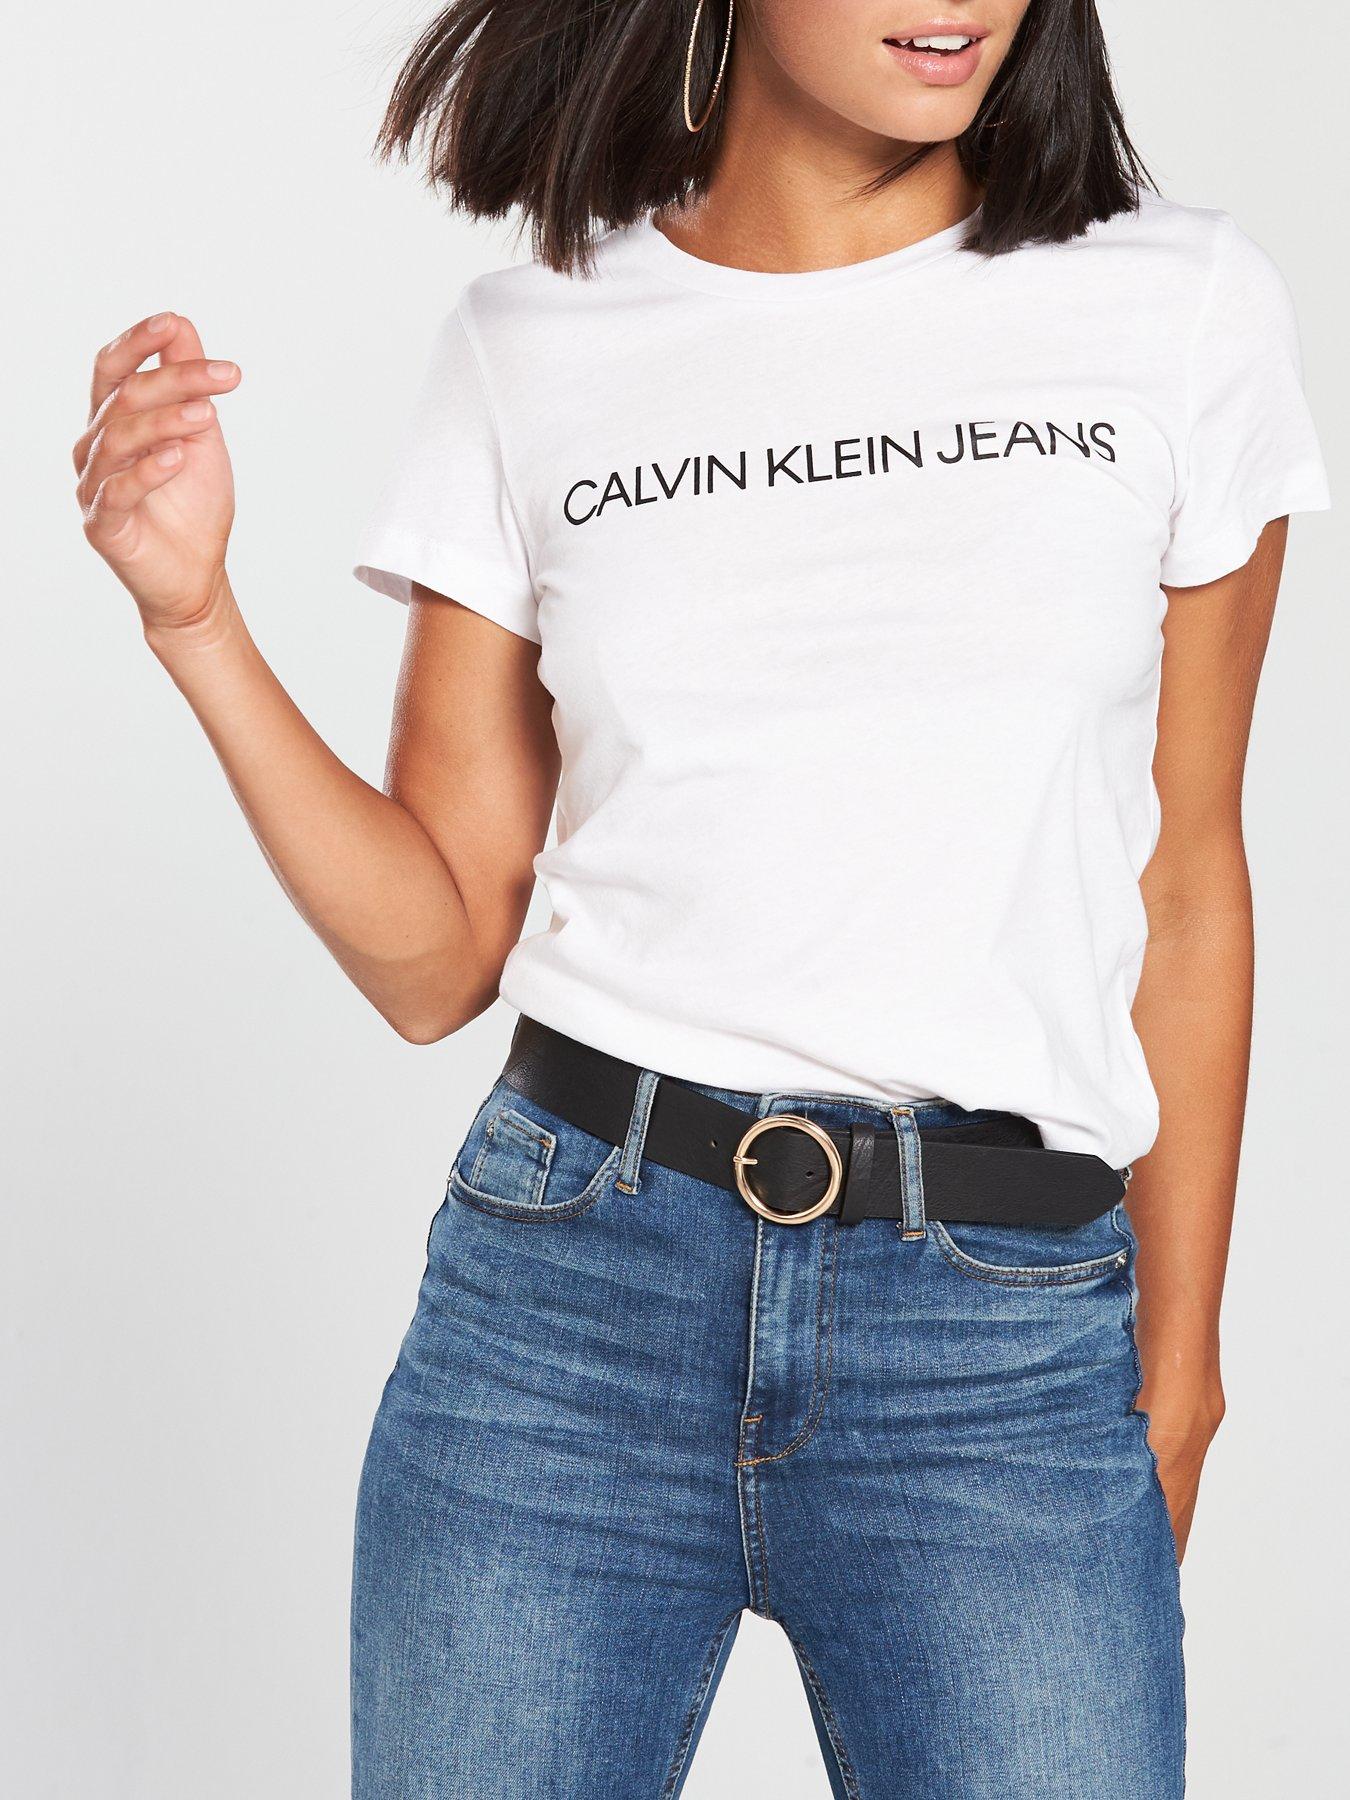 calvin klein shirt womens